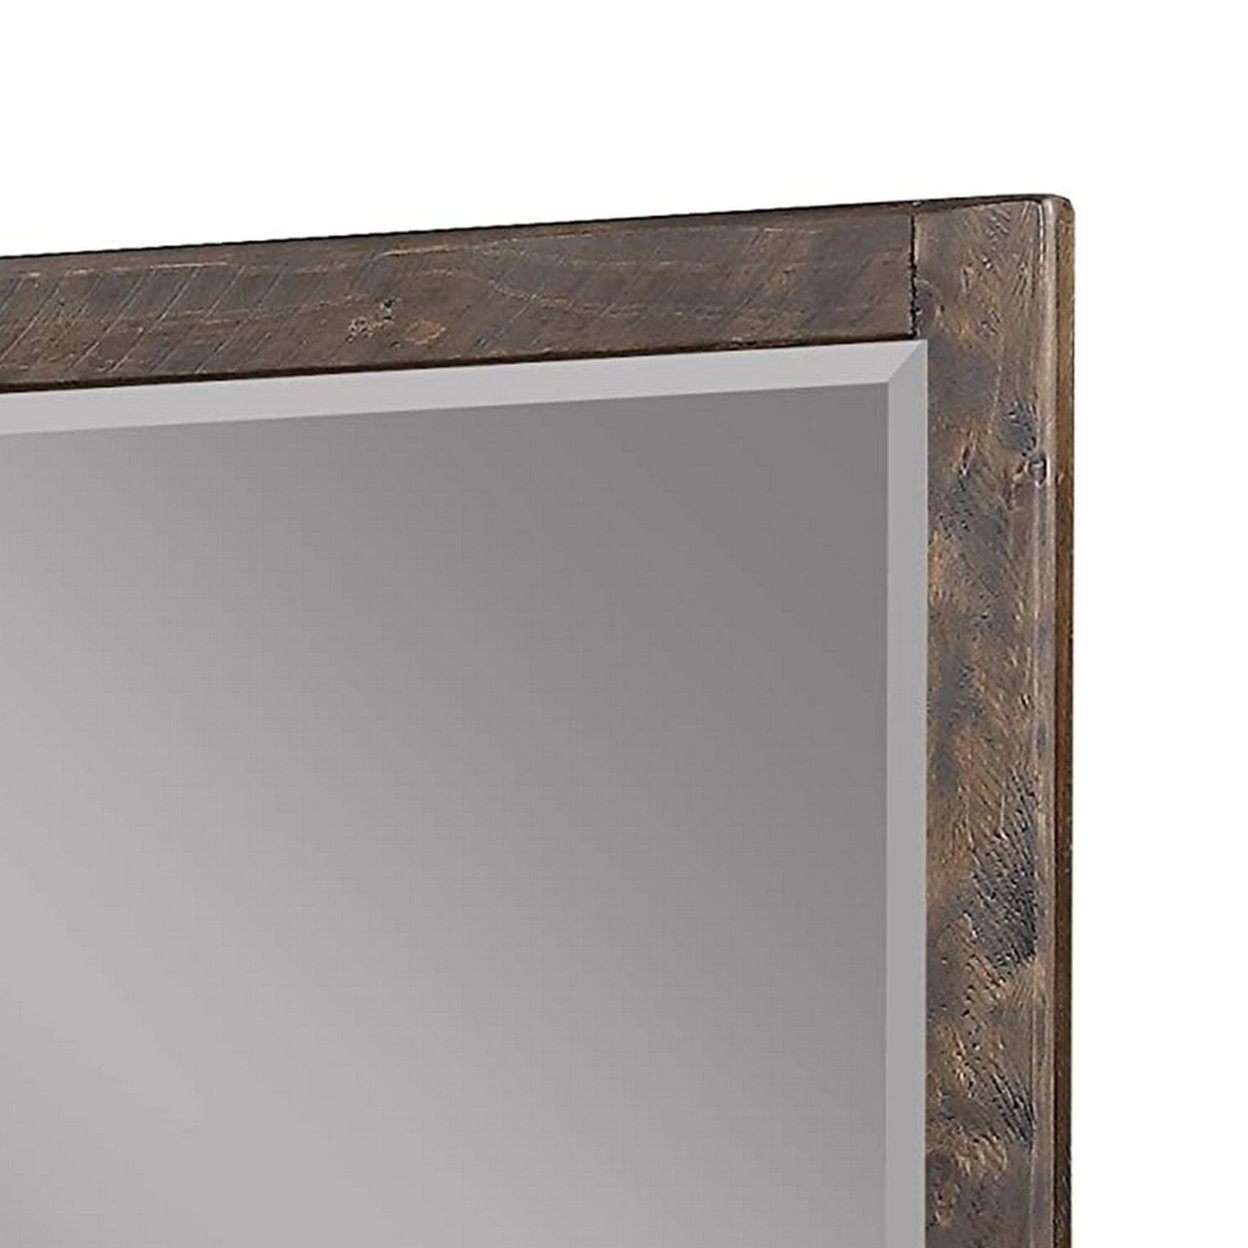 Rough Sawn Texture Wooden Frame Rectangular Dresser Mirror, Espresso Brown- Saltoro Sherpi